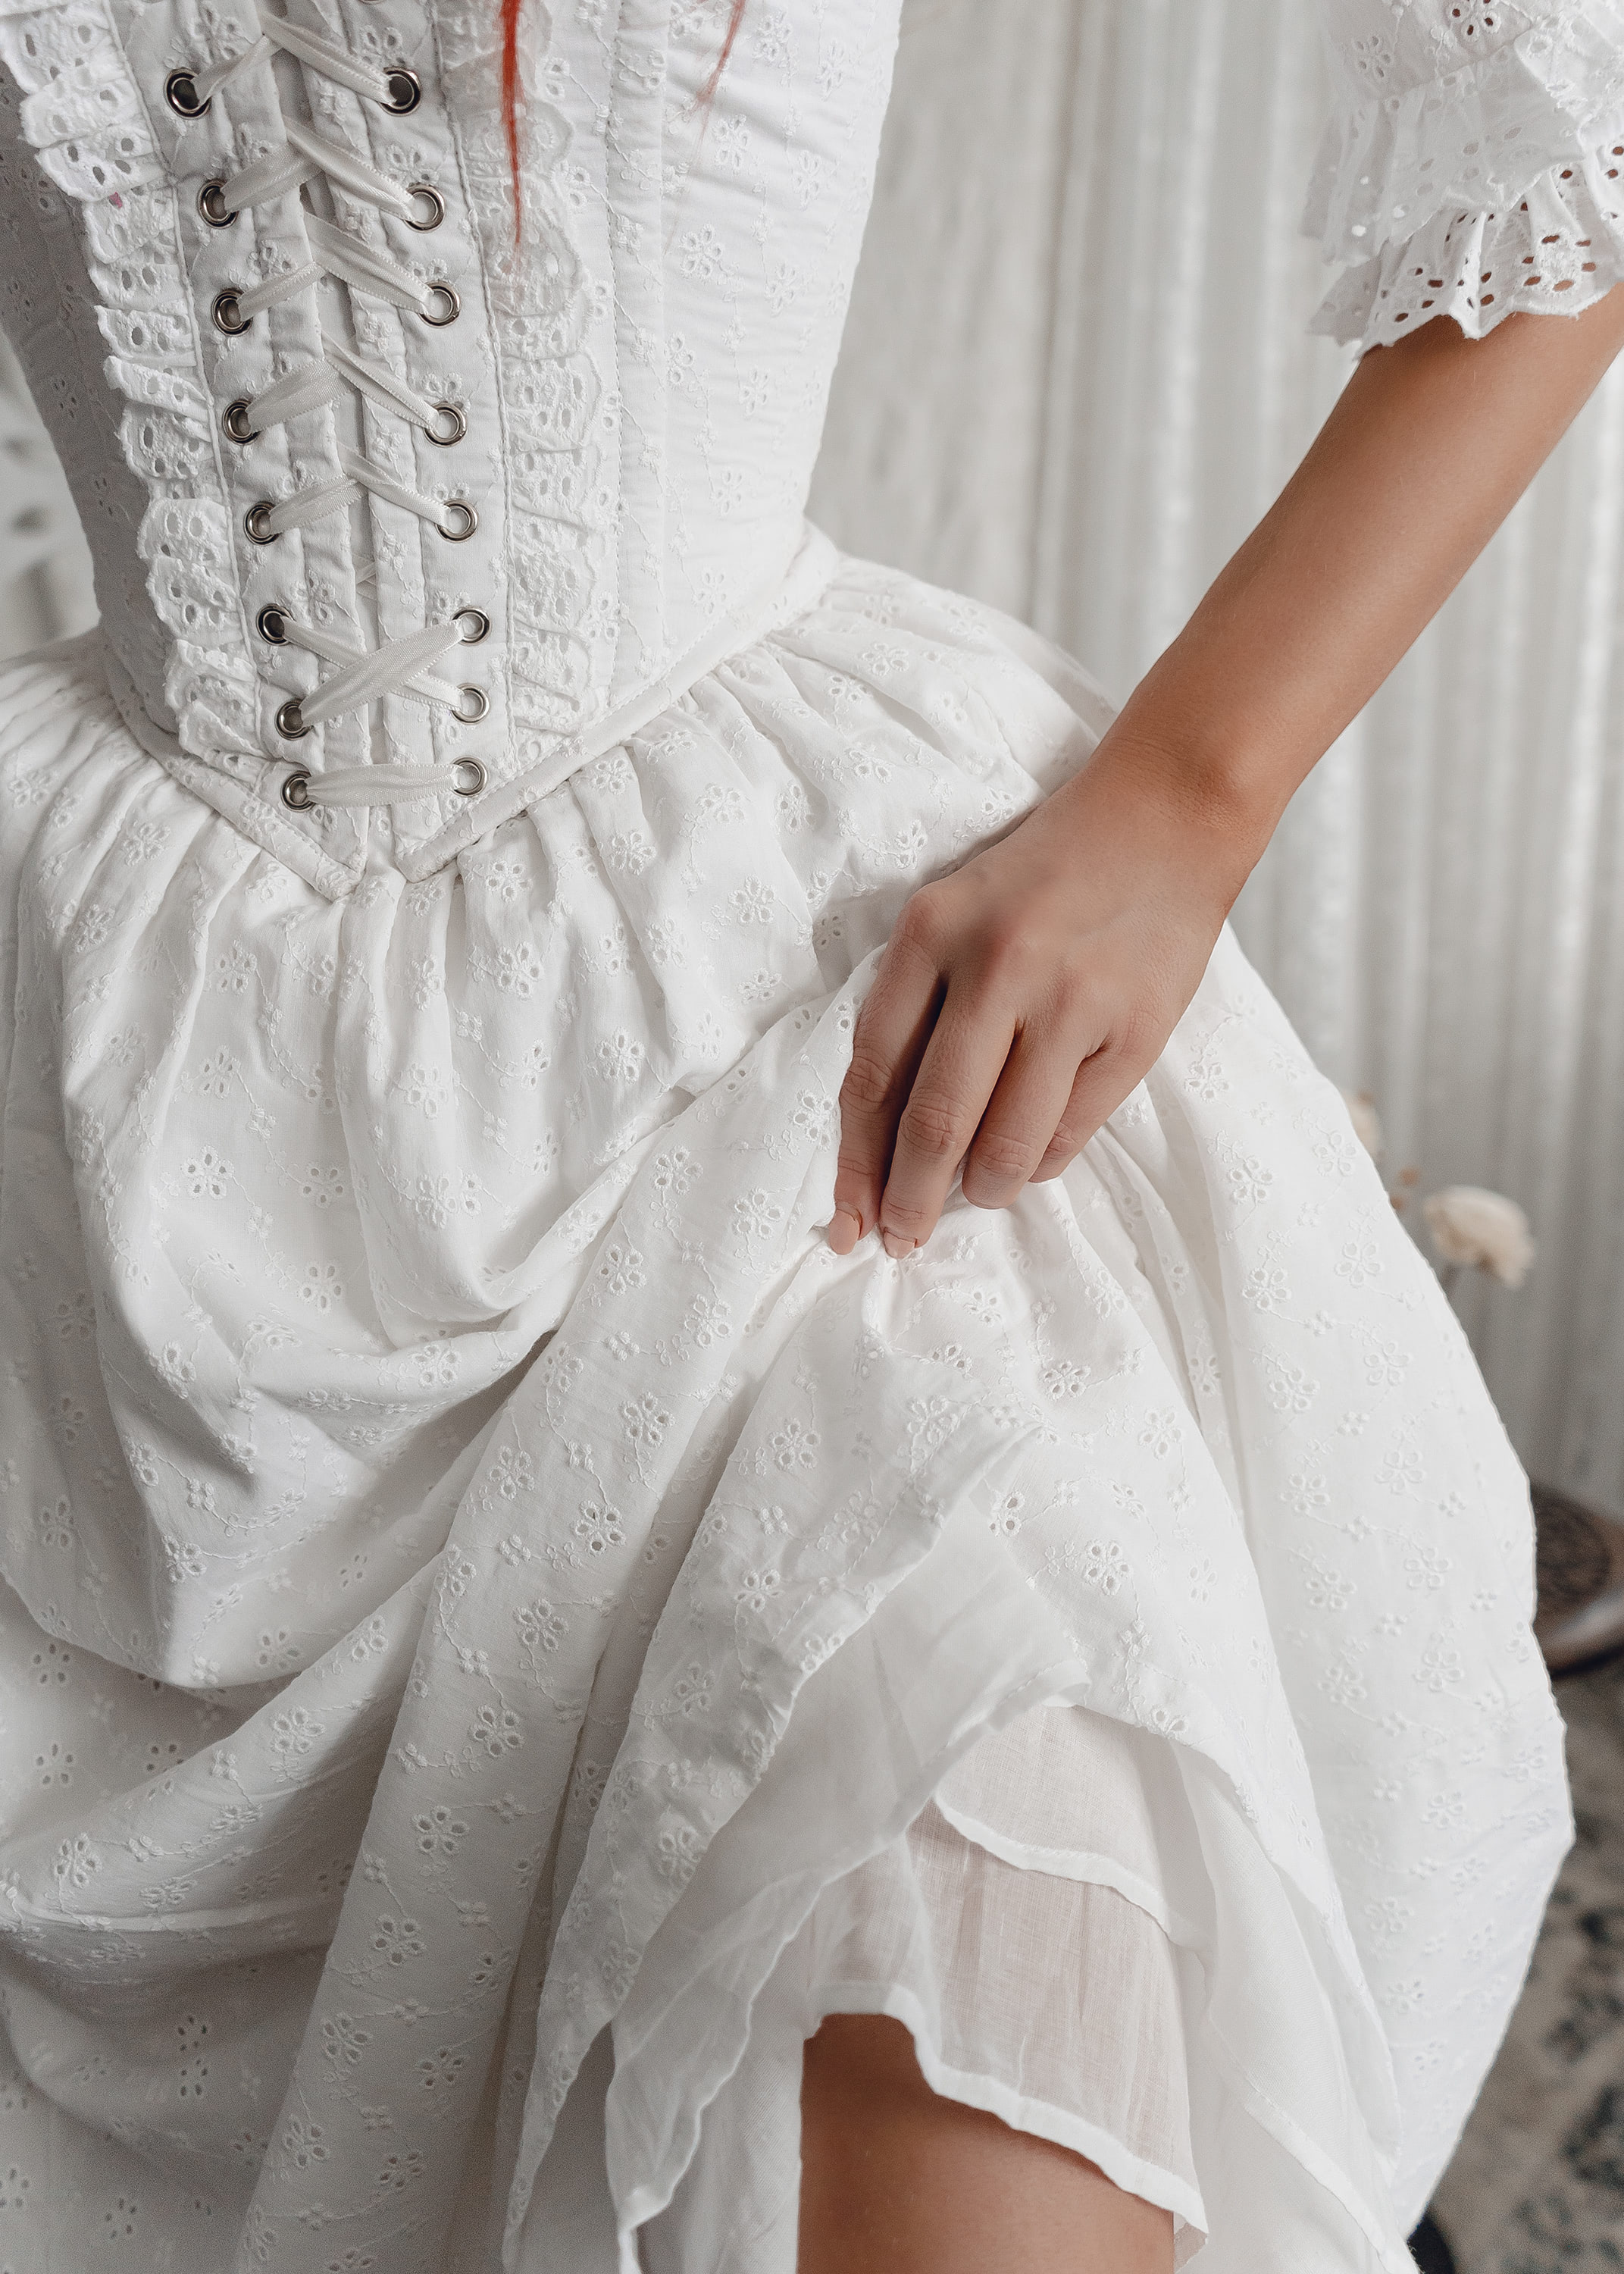 https://enjouecollectif.com/wp-content/uploads/2023/01/Enjoue-Marie-Antoinette-Corset-Dress-crop8.jpg